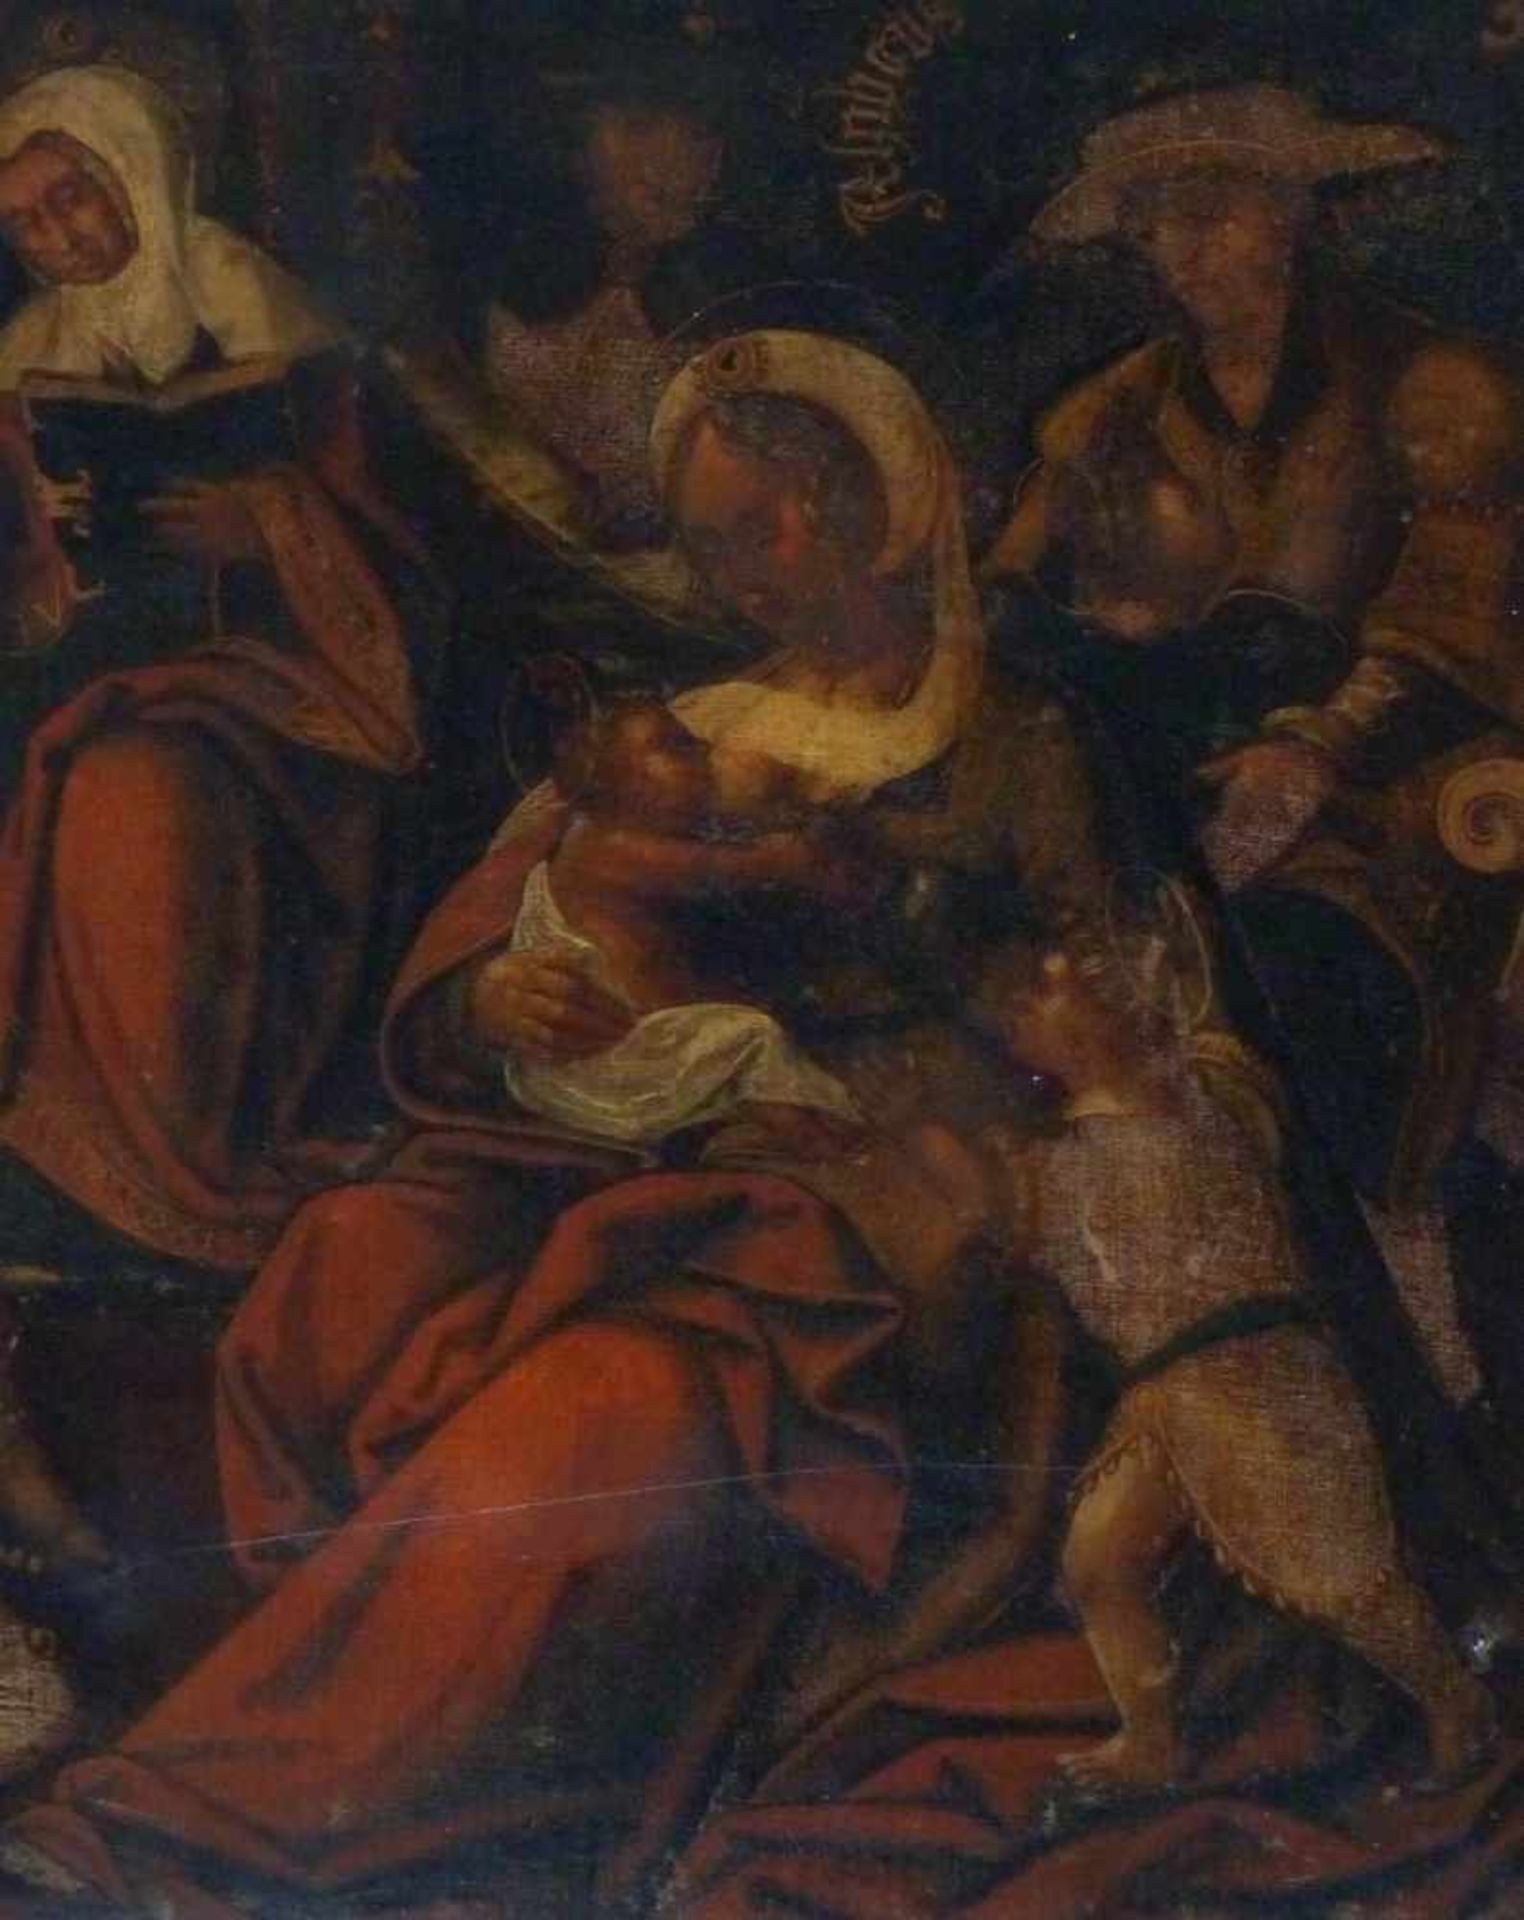 Maria lactans umgeben von HeiligenWohl Italien, 17. Jh.Öl/Lwd., randdoubl. 66 x 53 cm; unger. -